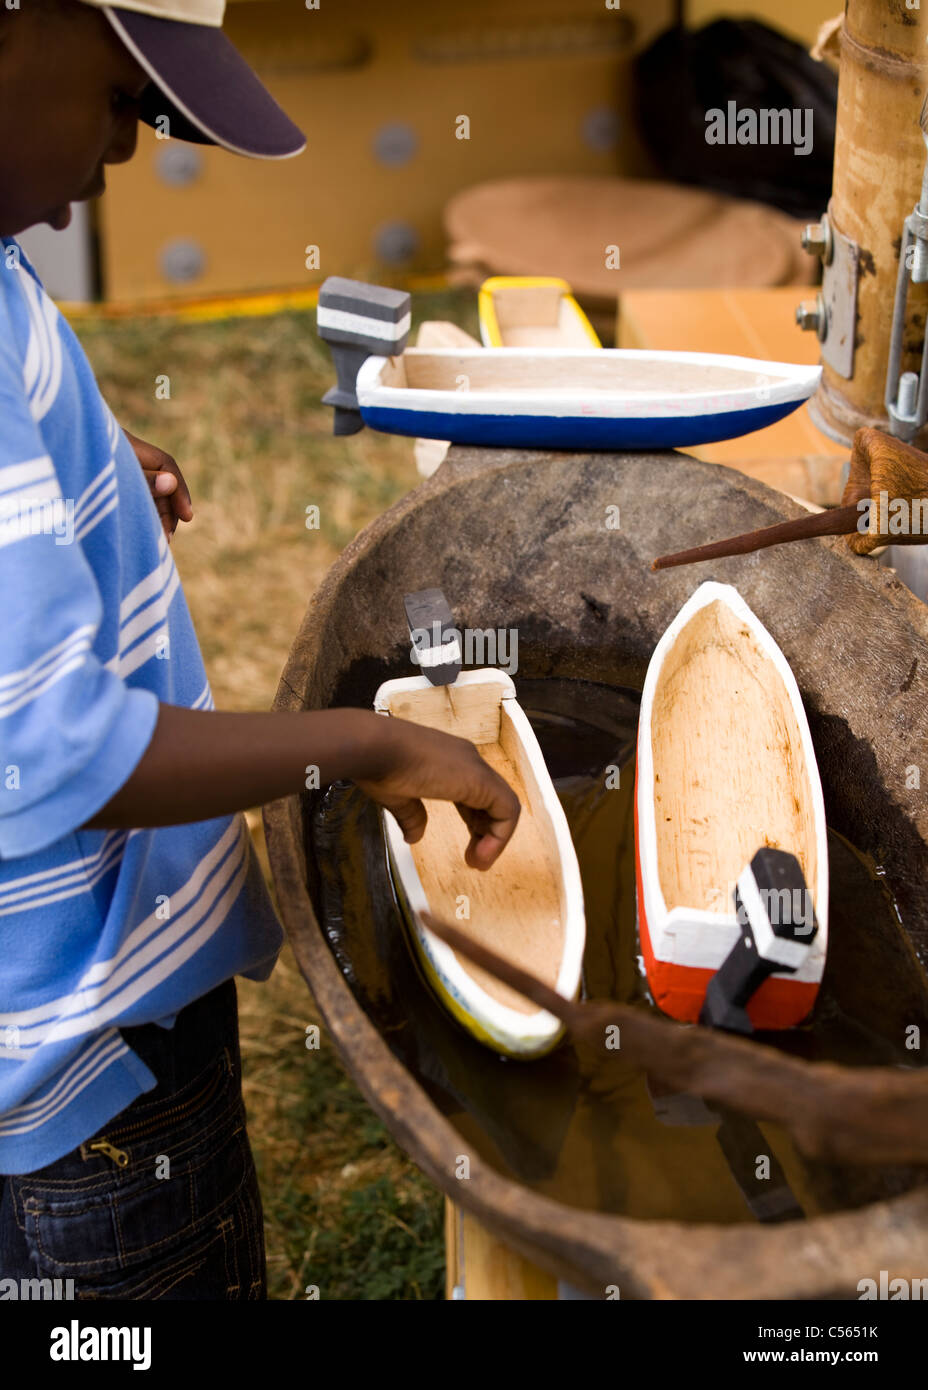 Jeune garçon africain inspecte les bateaux en bois de jouets dans la baignoire d'eau Banque D'Images